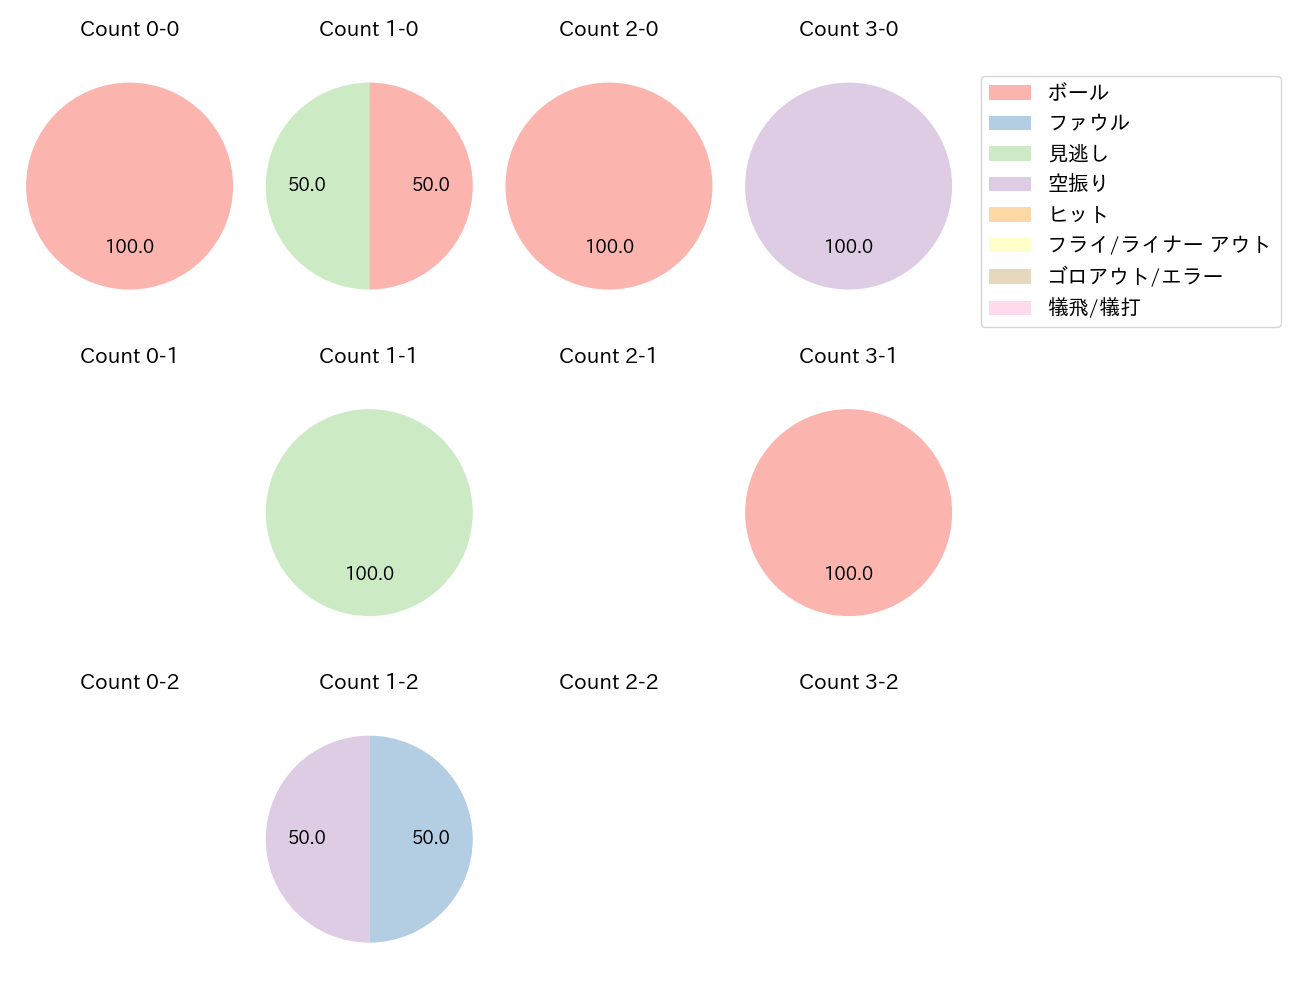 益子 京右の球数分布(2022年4月)